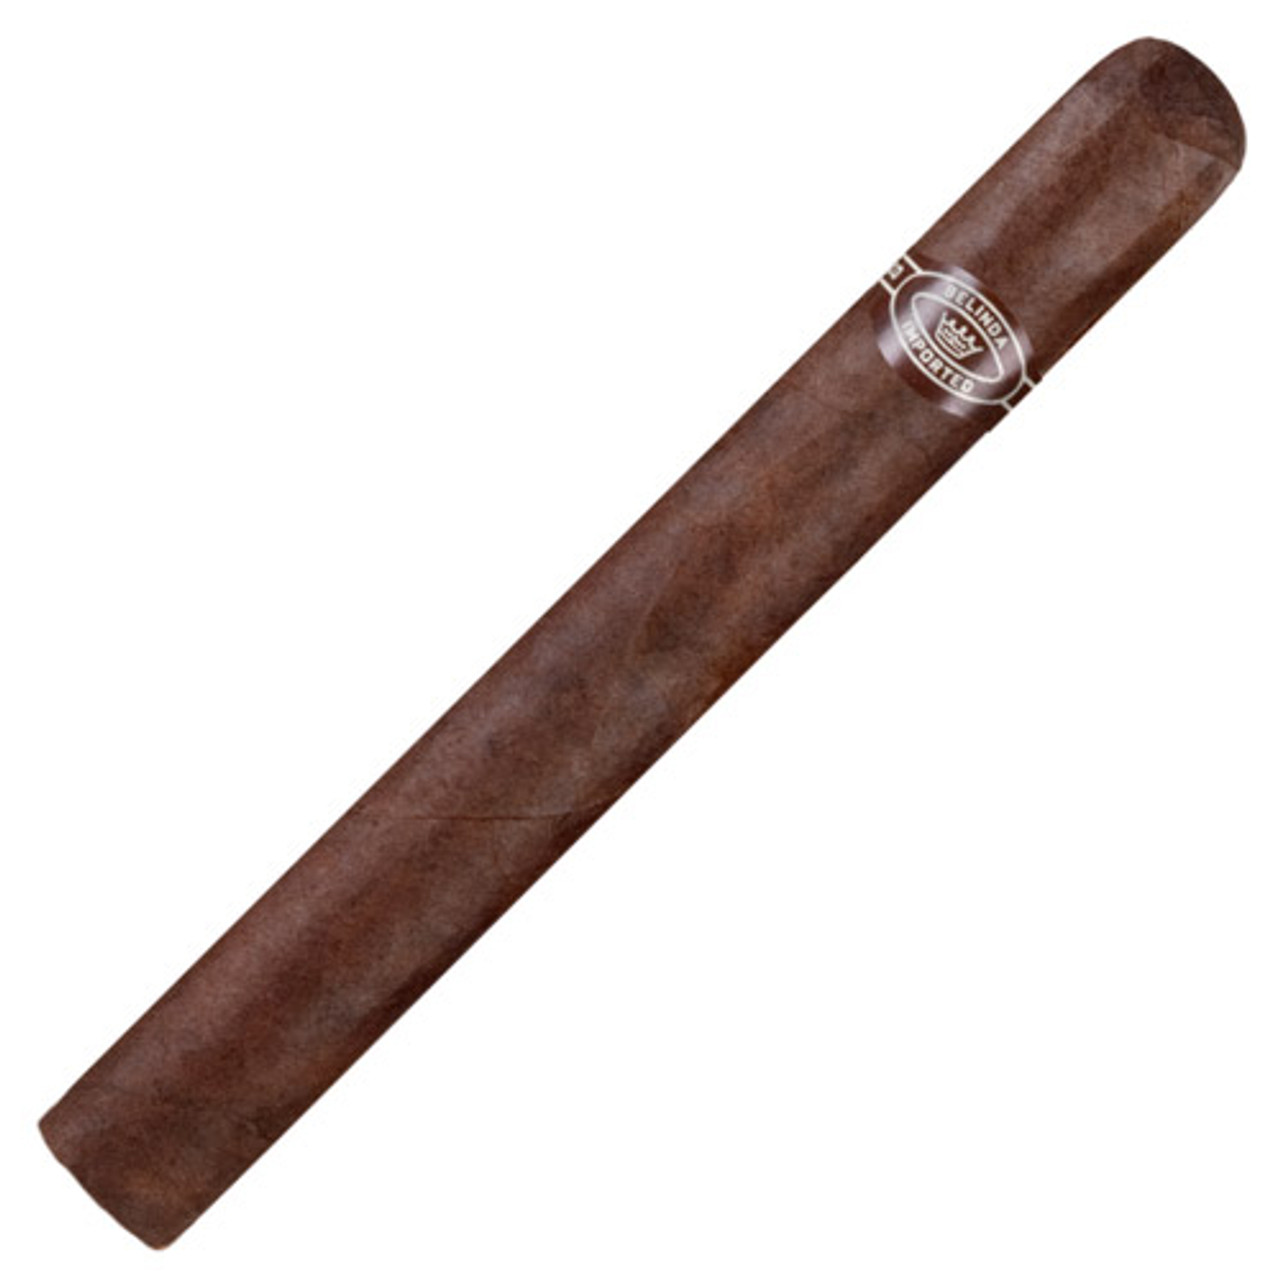 Belinda Black Exquisito - 6 x 50 Cigars (Pack of 5)